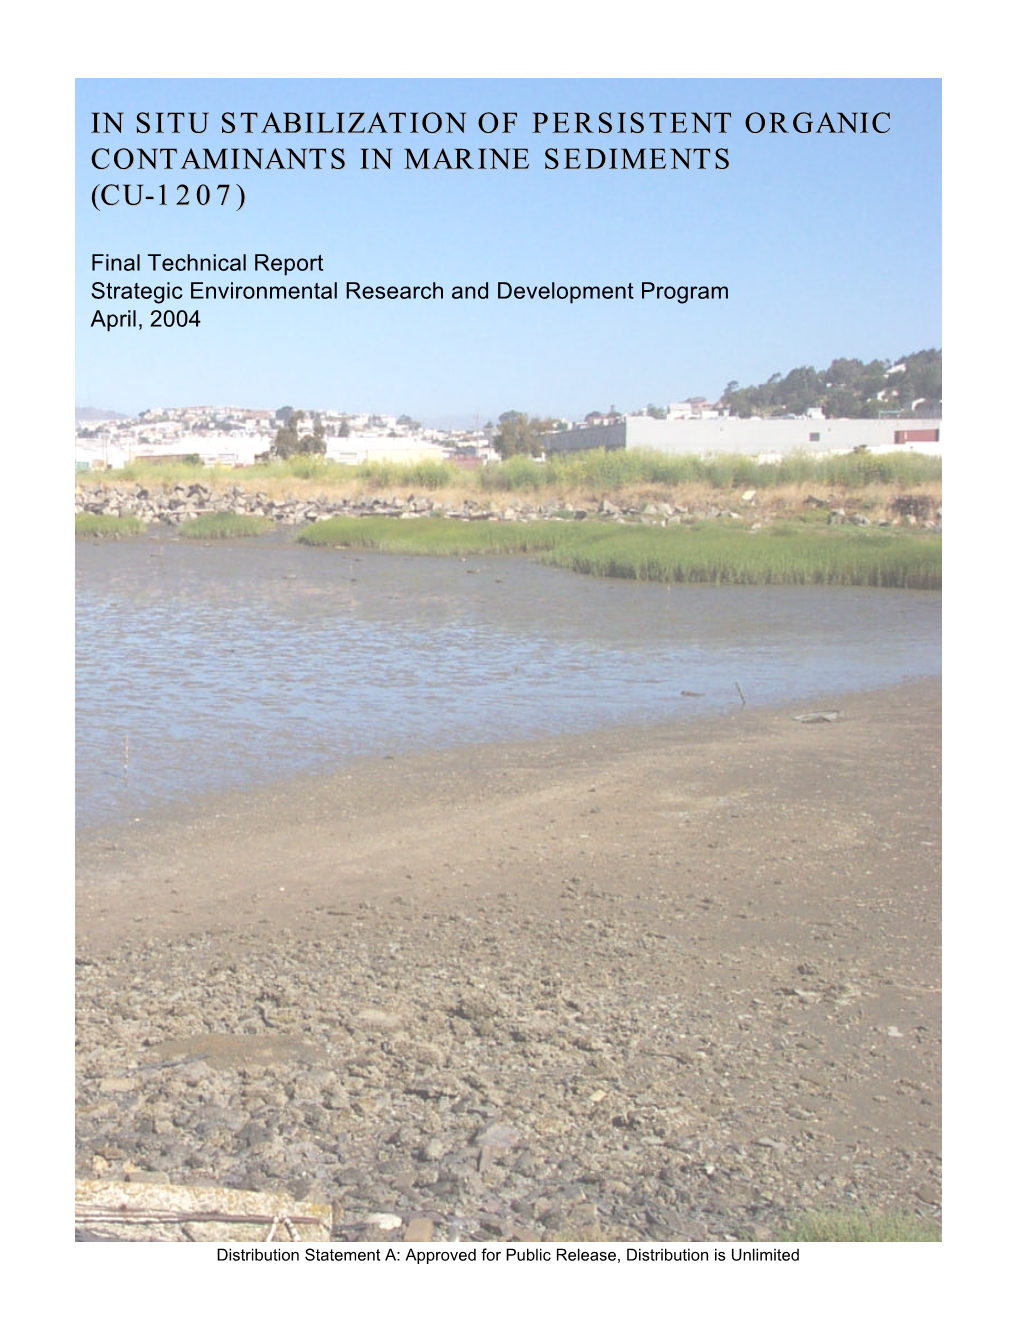 In-Situ Stabilization of Persistent Organic Contaminants in Marine